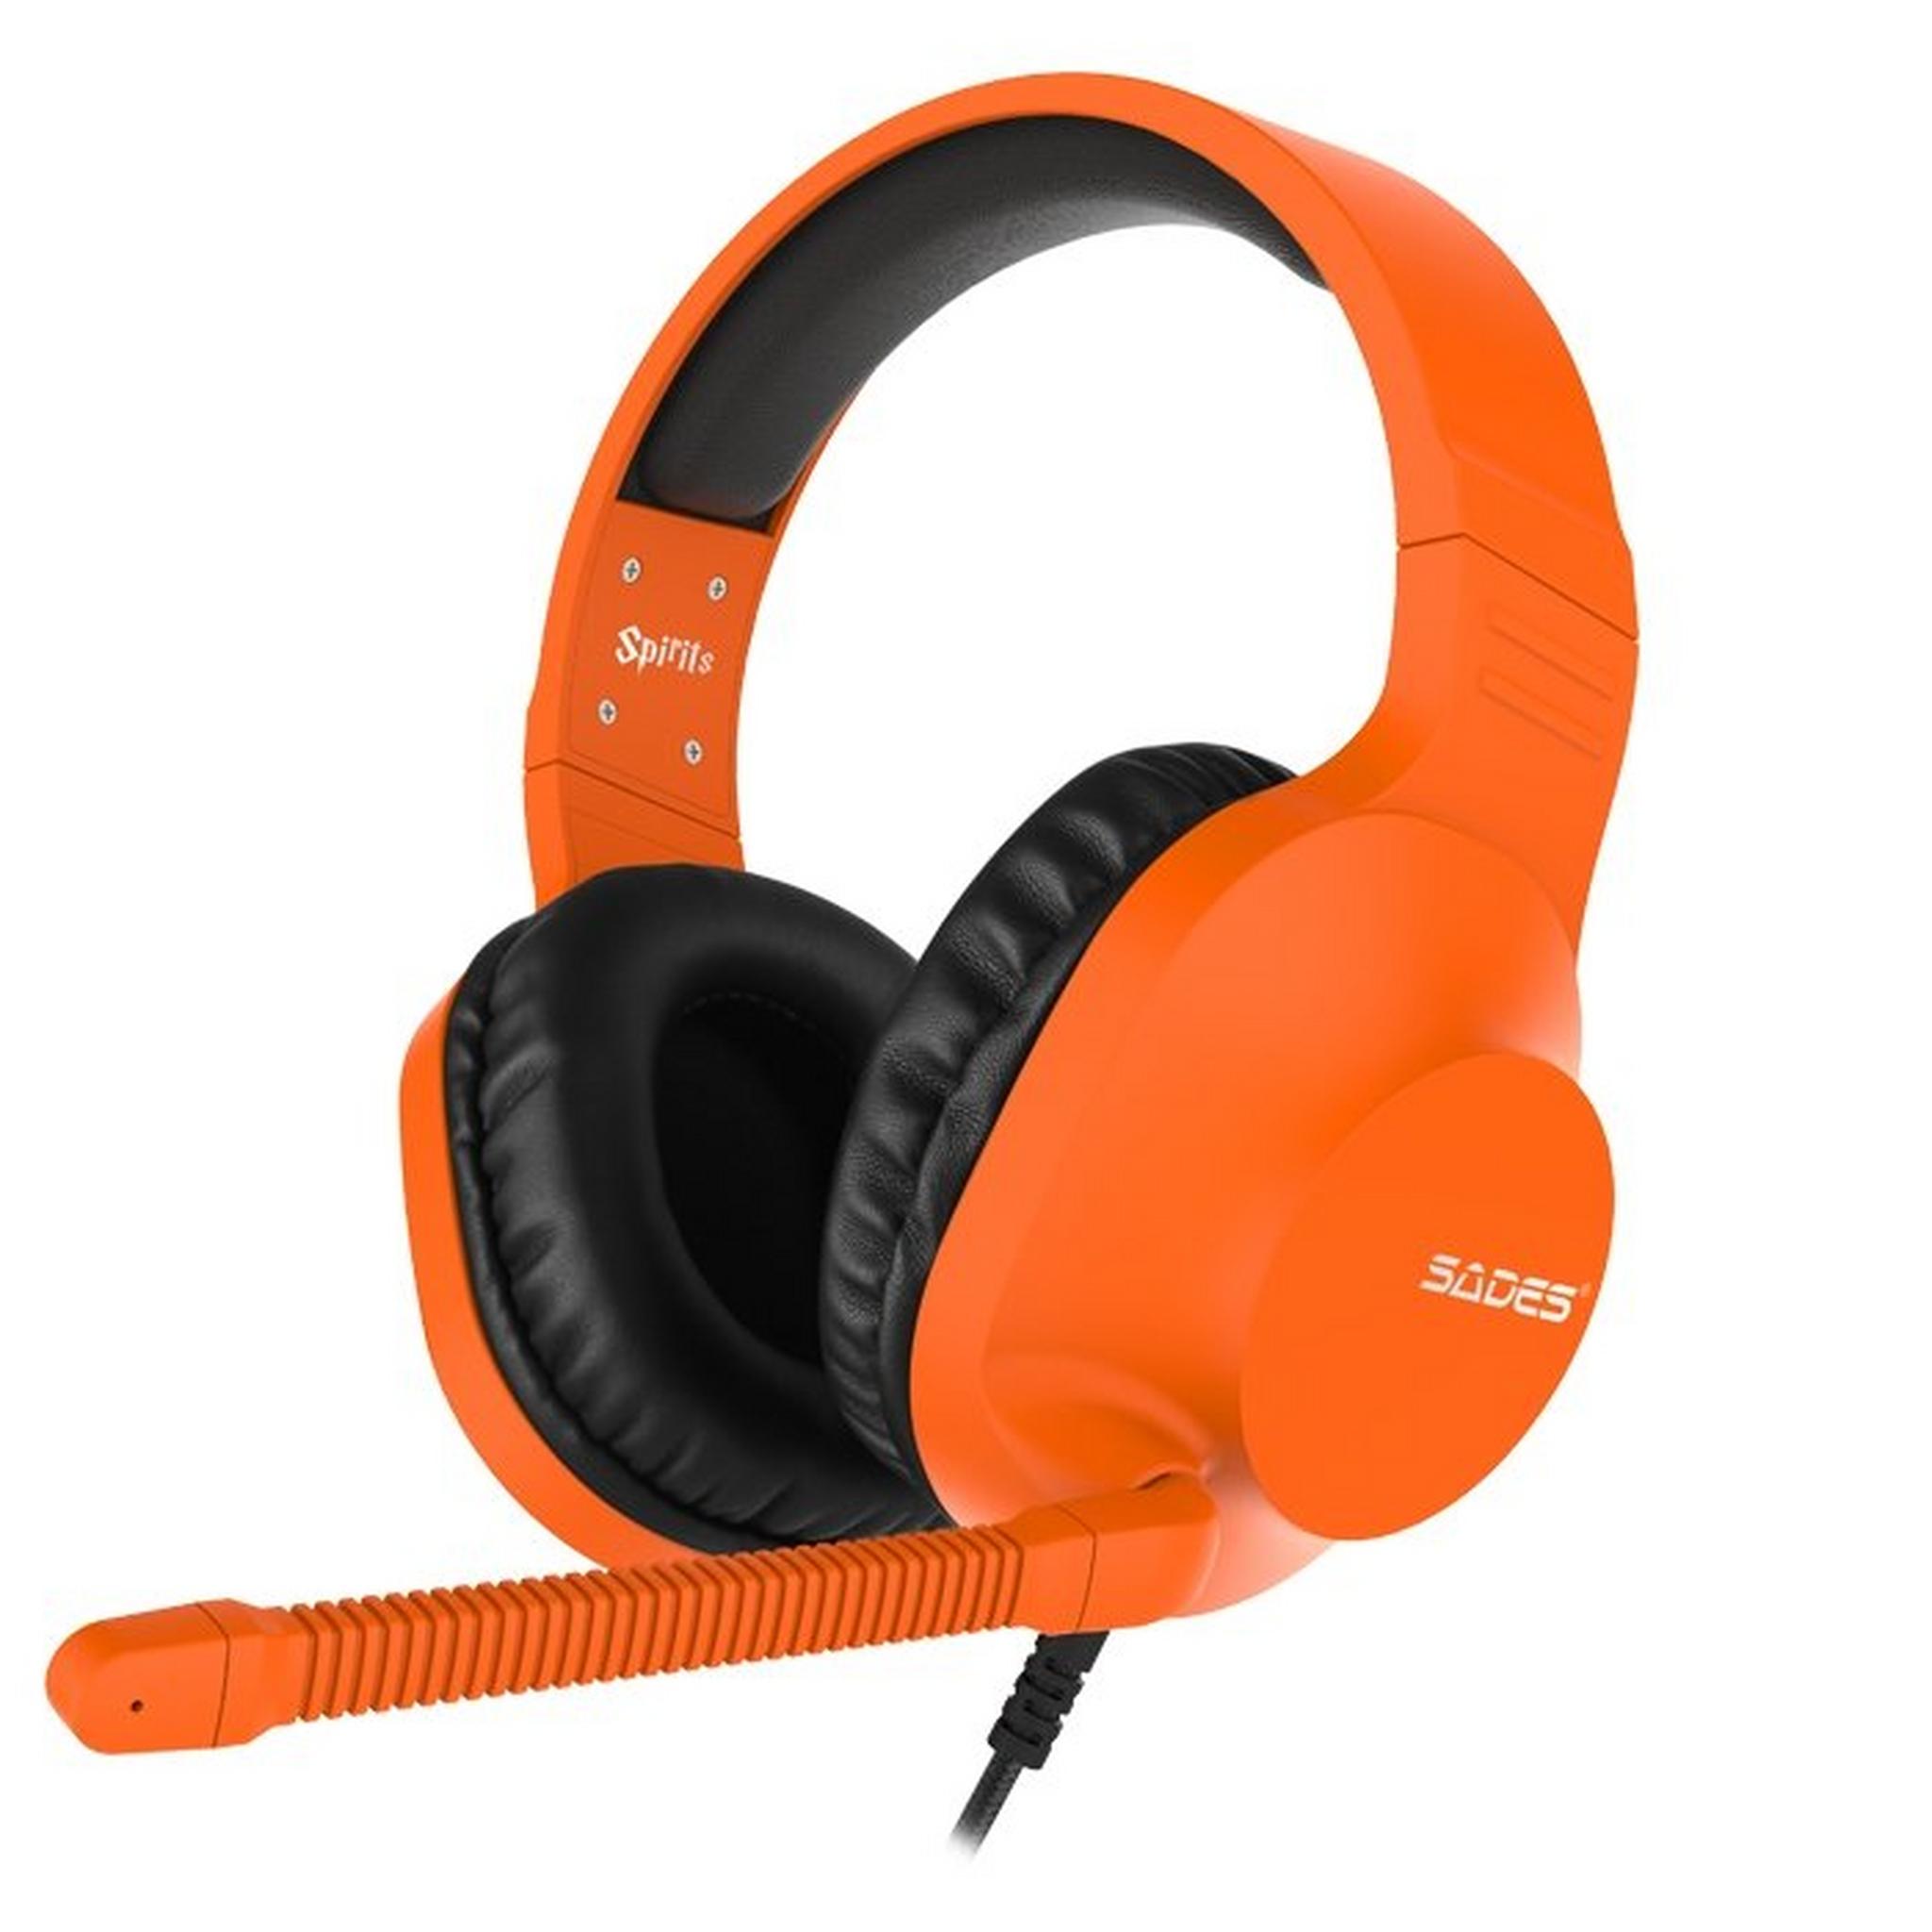 Sades Spirits SA721 Gaming Headset - Orange